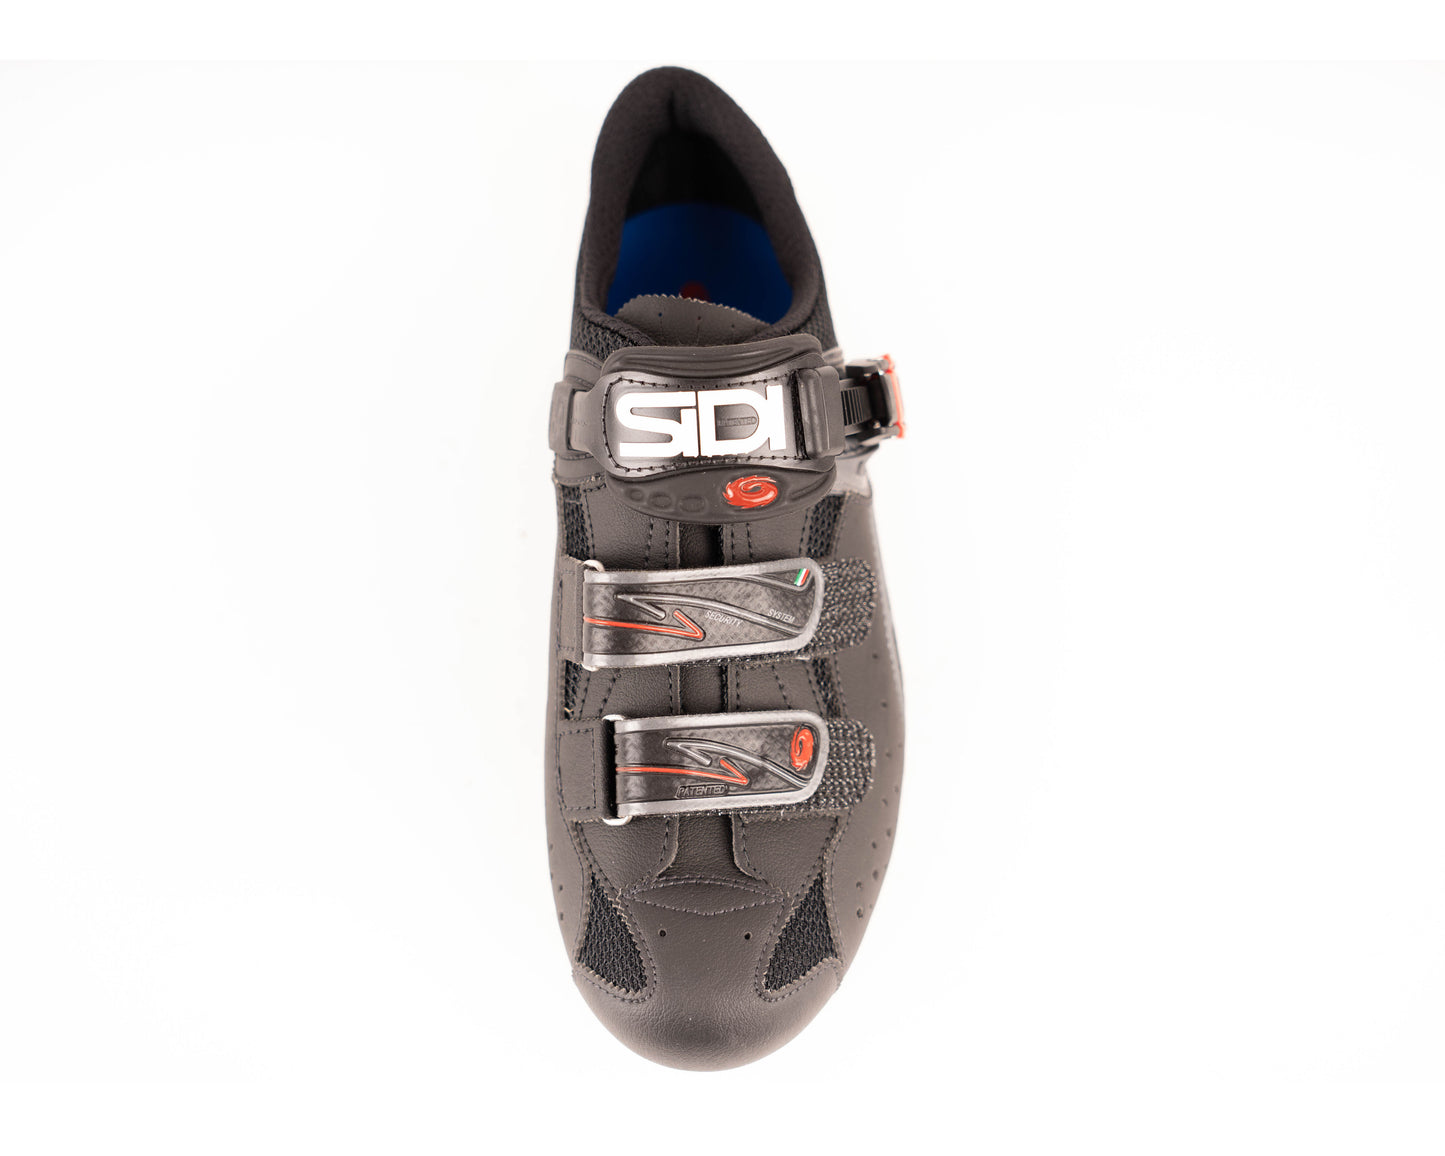 Sidi Dominator Fit Shoe Blk 43.5 Left ONLY